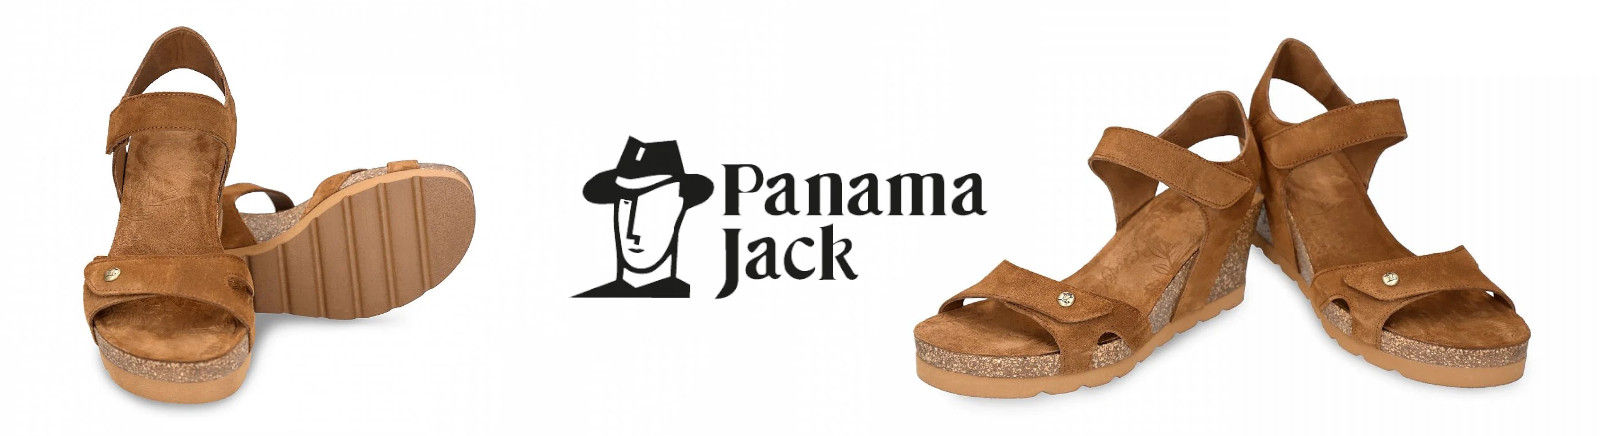 Panama Jack Winterschuhe für Schuhe im Online-Shop von GISY kaufen